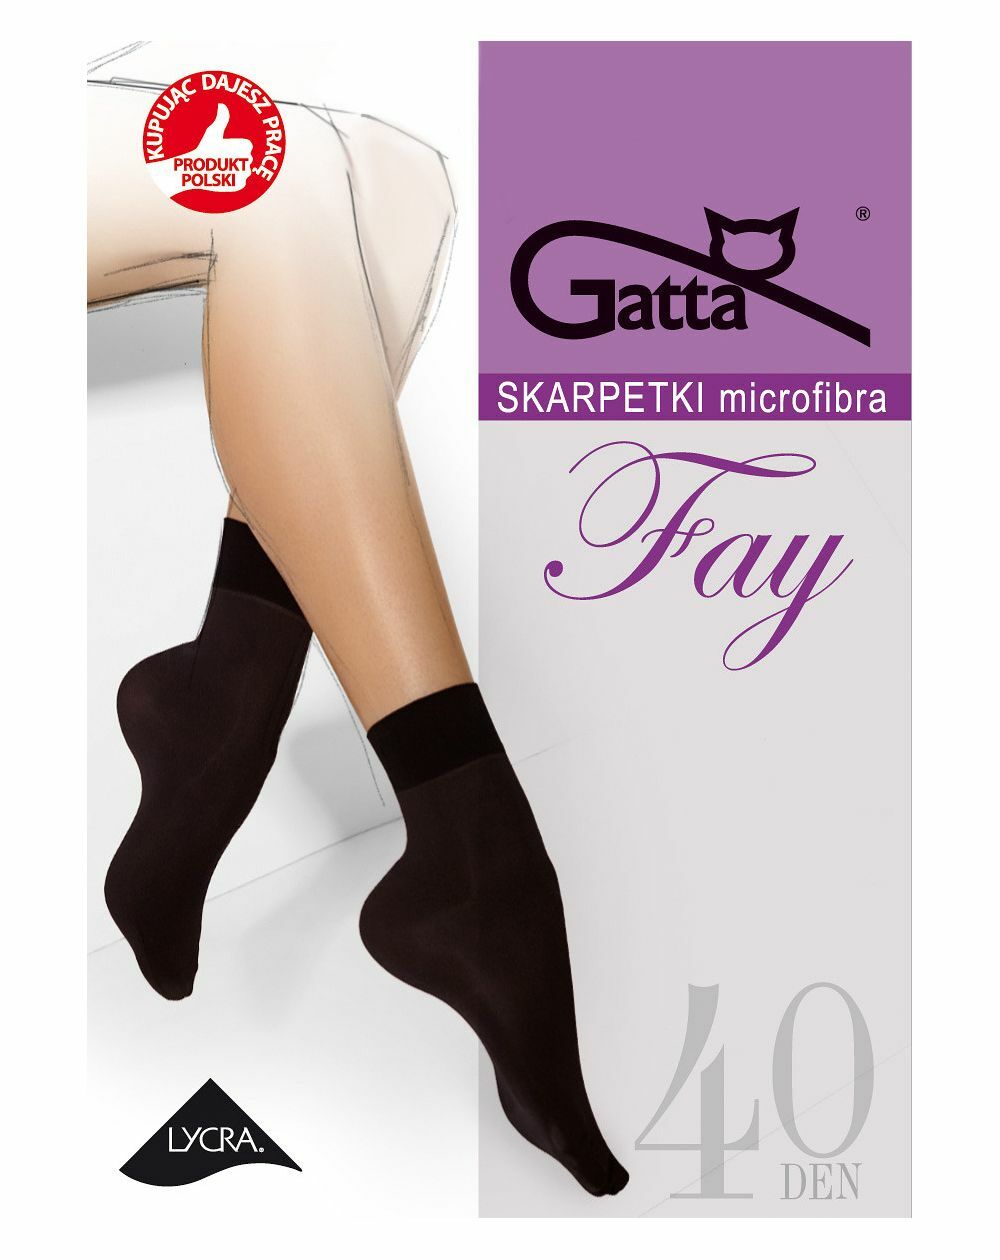 Gatta Fay Mikrofaser-Socken